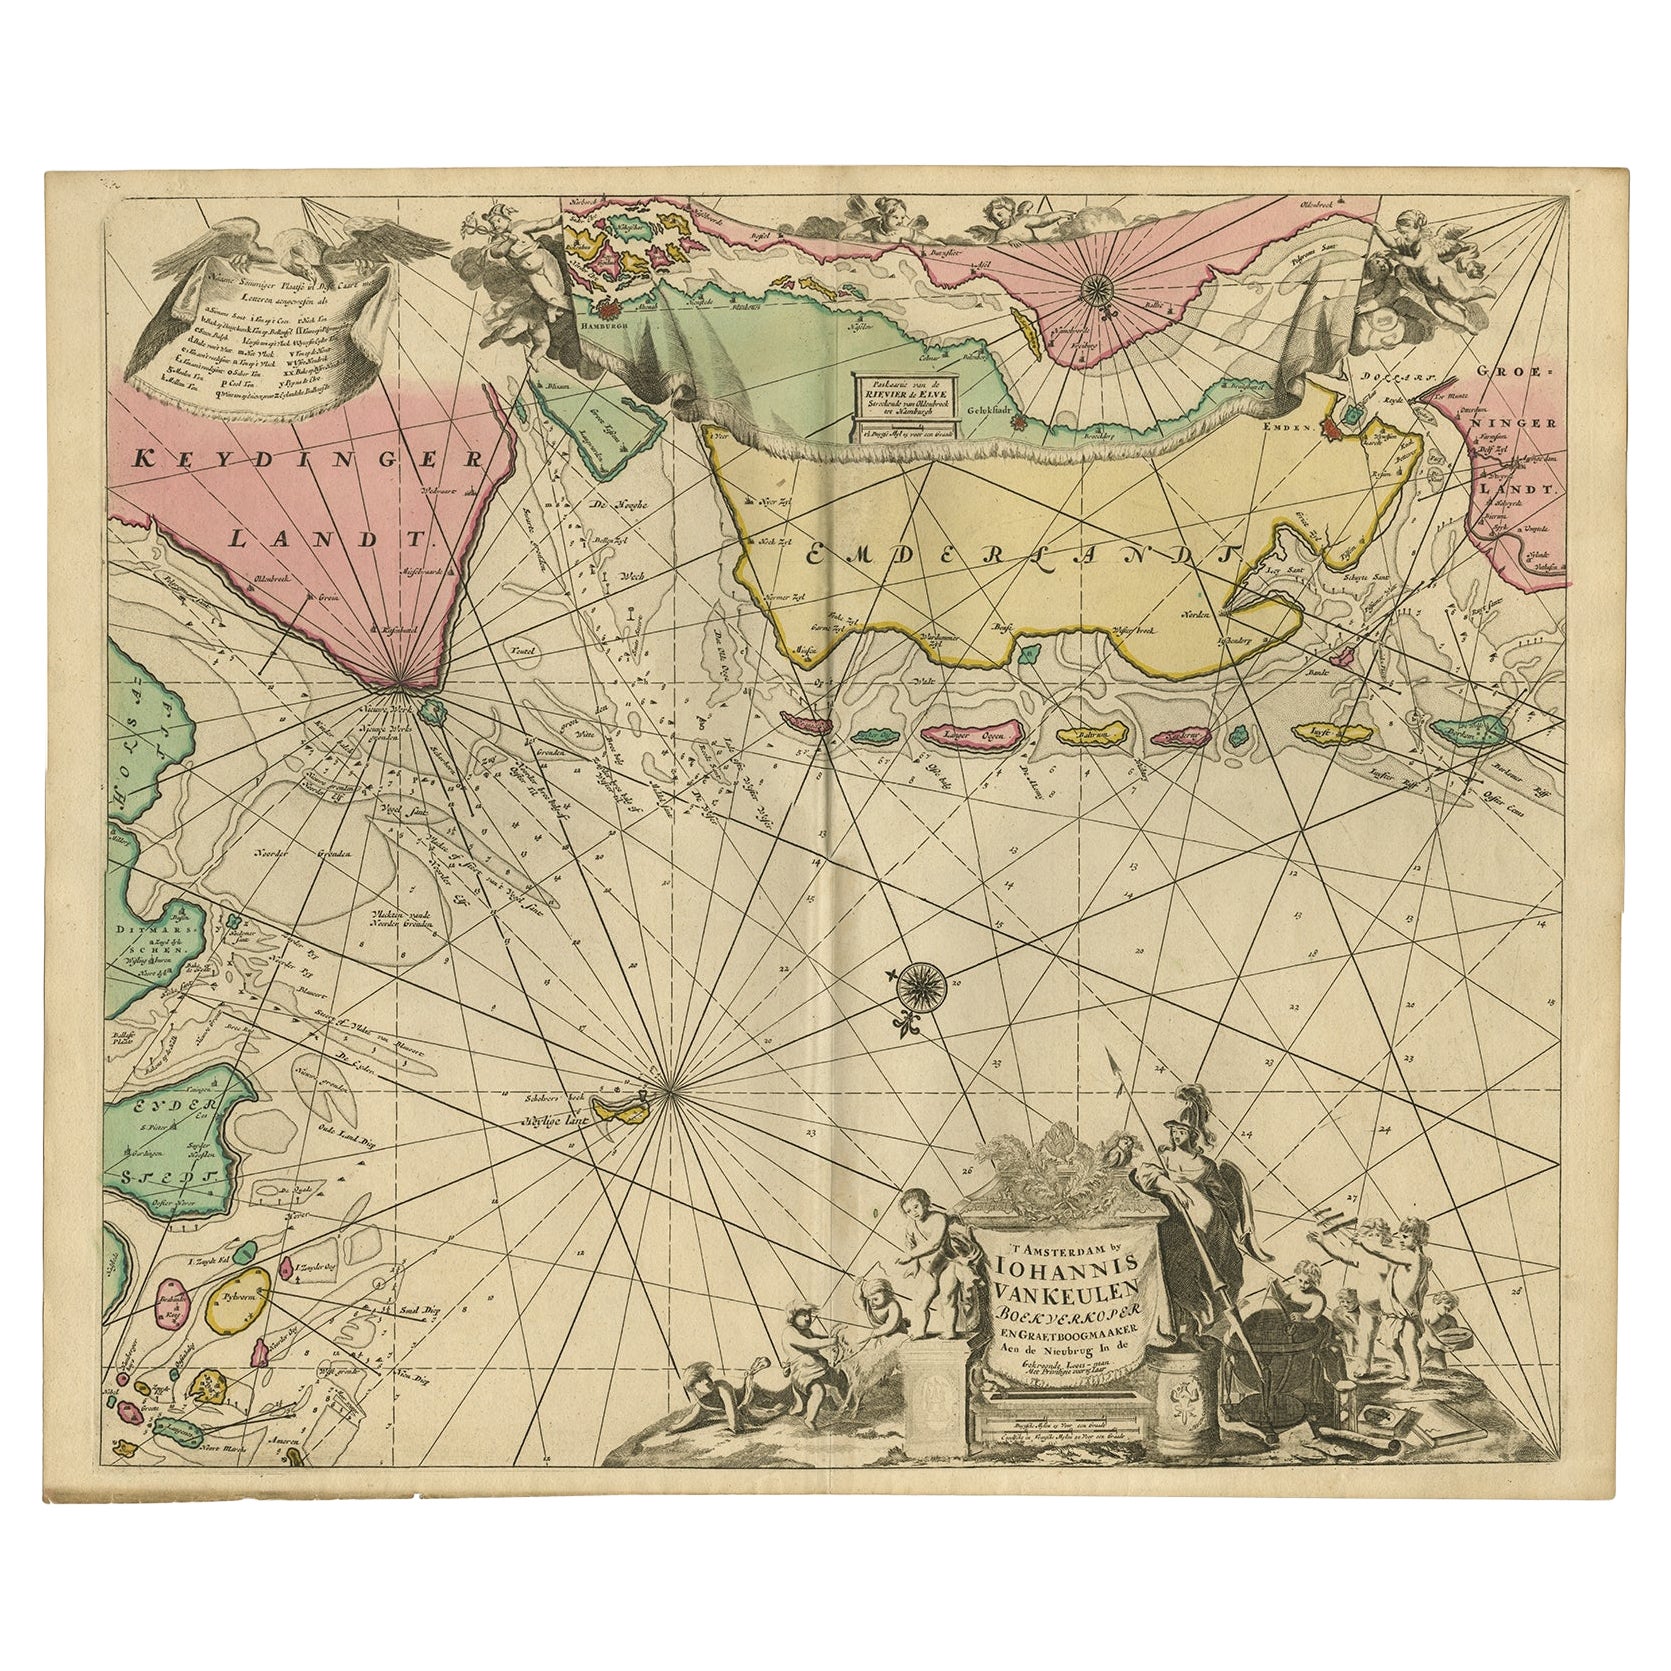 Tableau marin rare des îles Frises orientales ou Watten et des mers du Nord, vers 1770